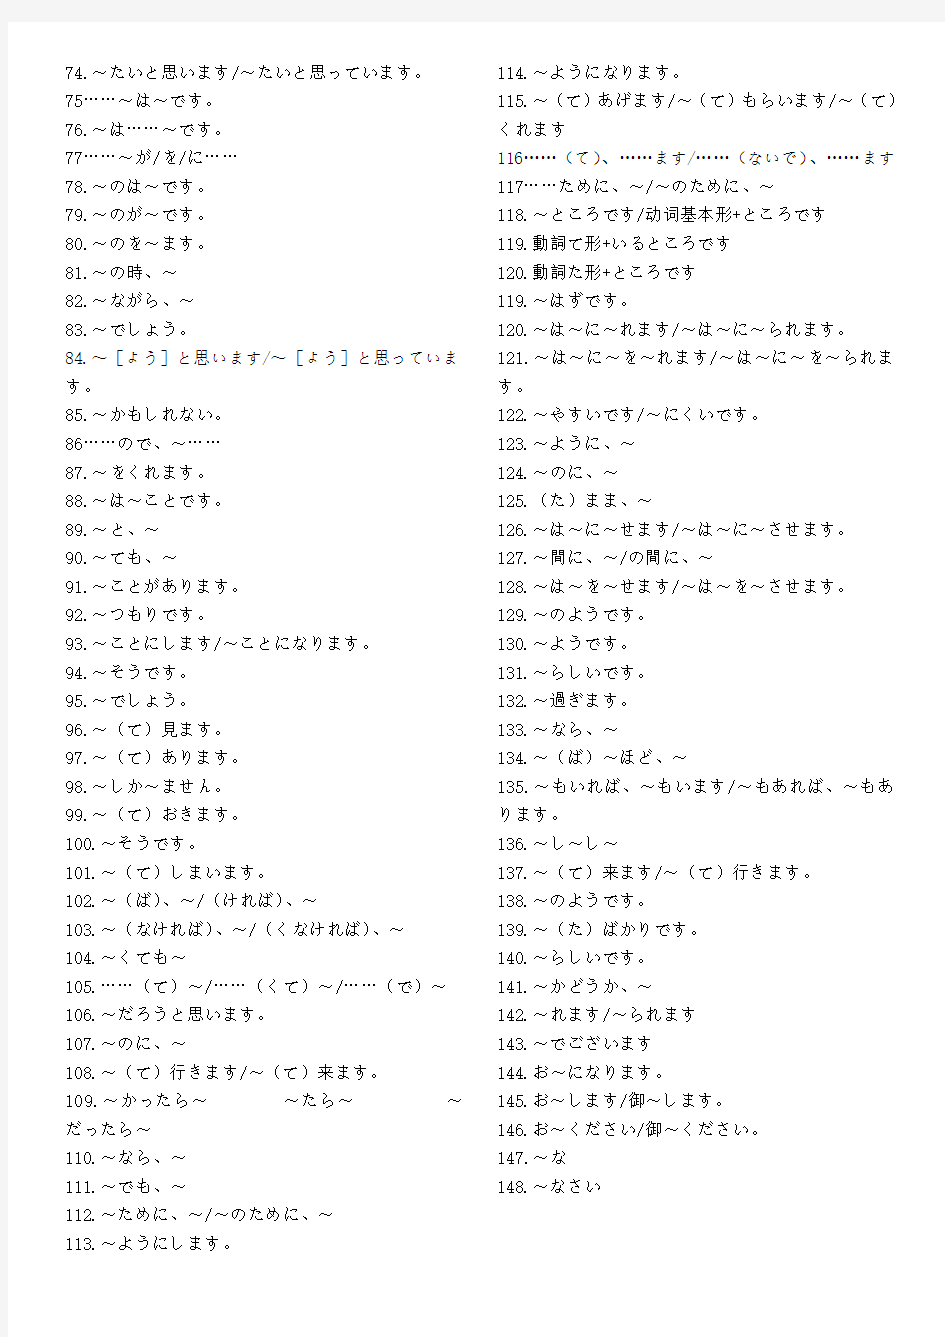 标准日本语初级(第二版)常用句型